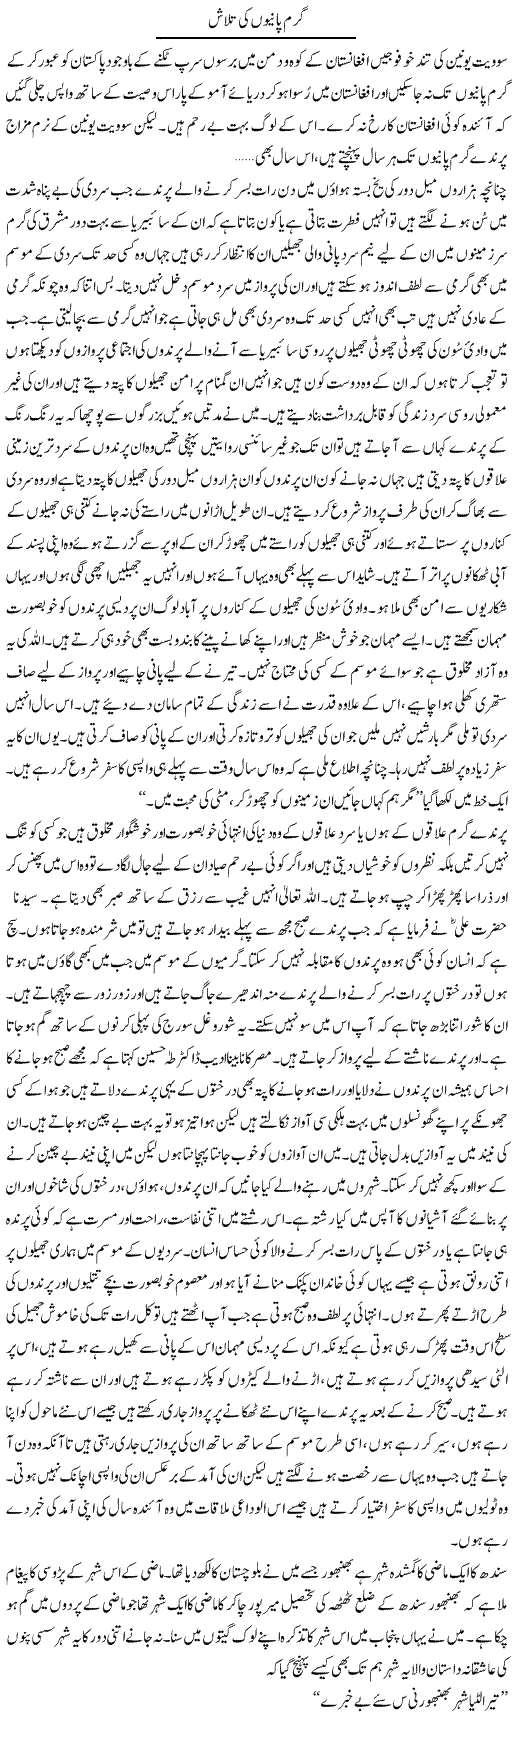 Garam Panio Ki Talash | Abdul Qadir Hassan | Daily Urdu Columns